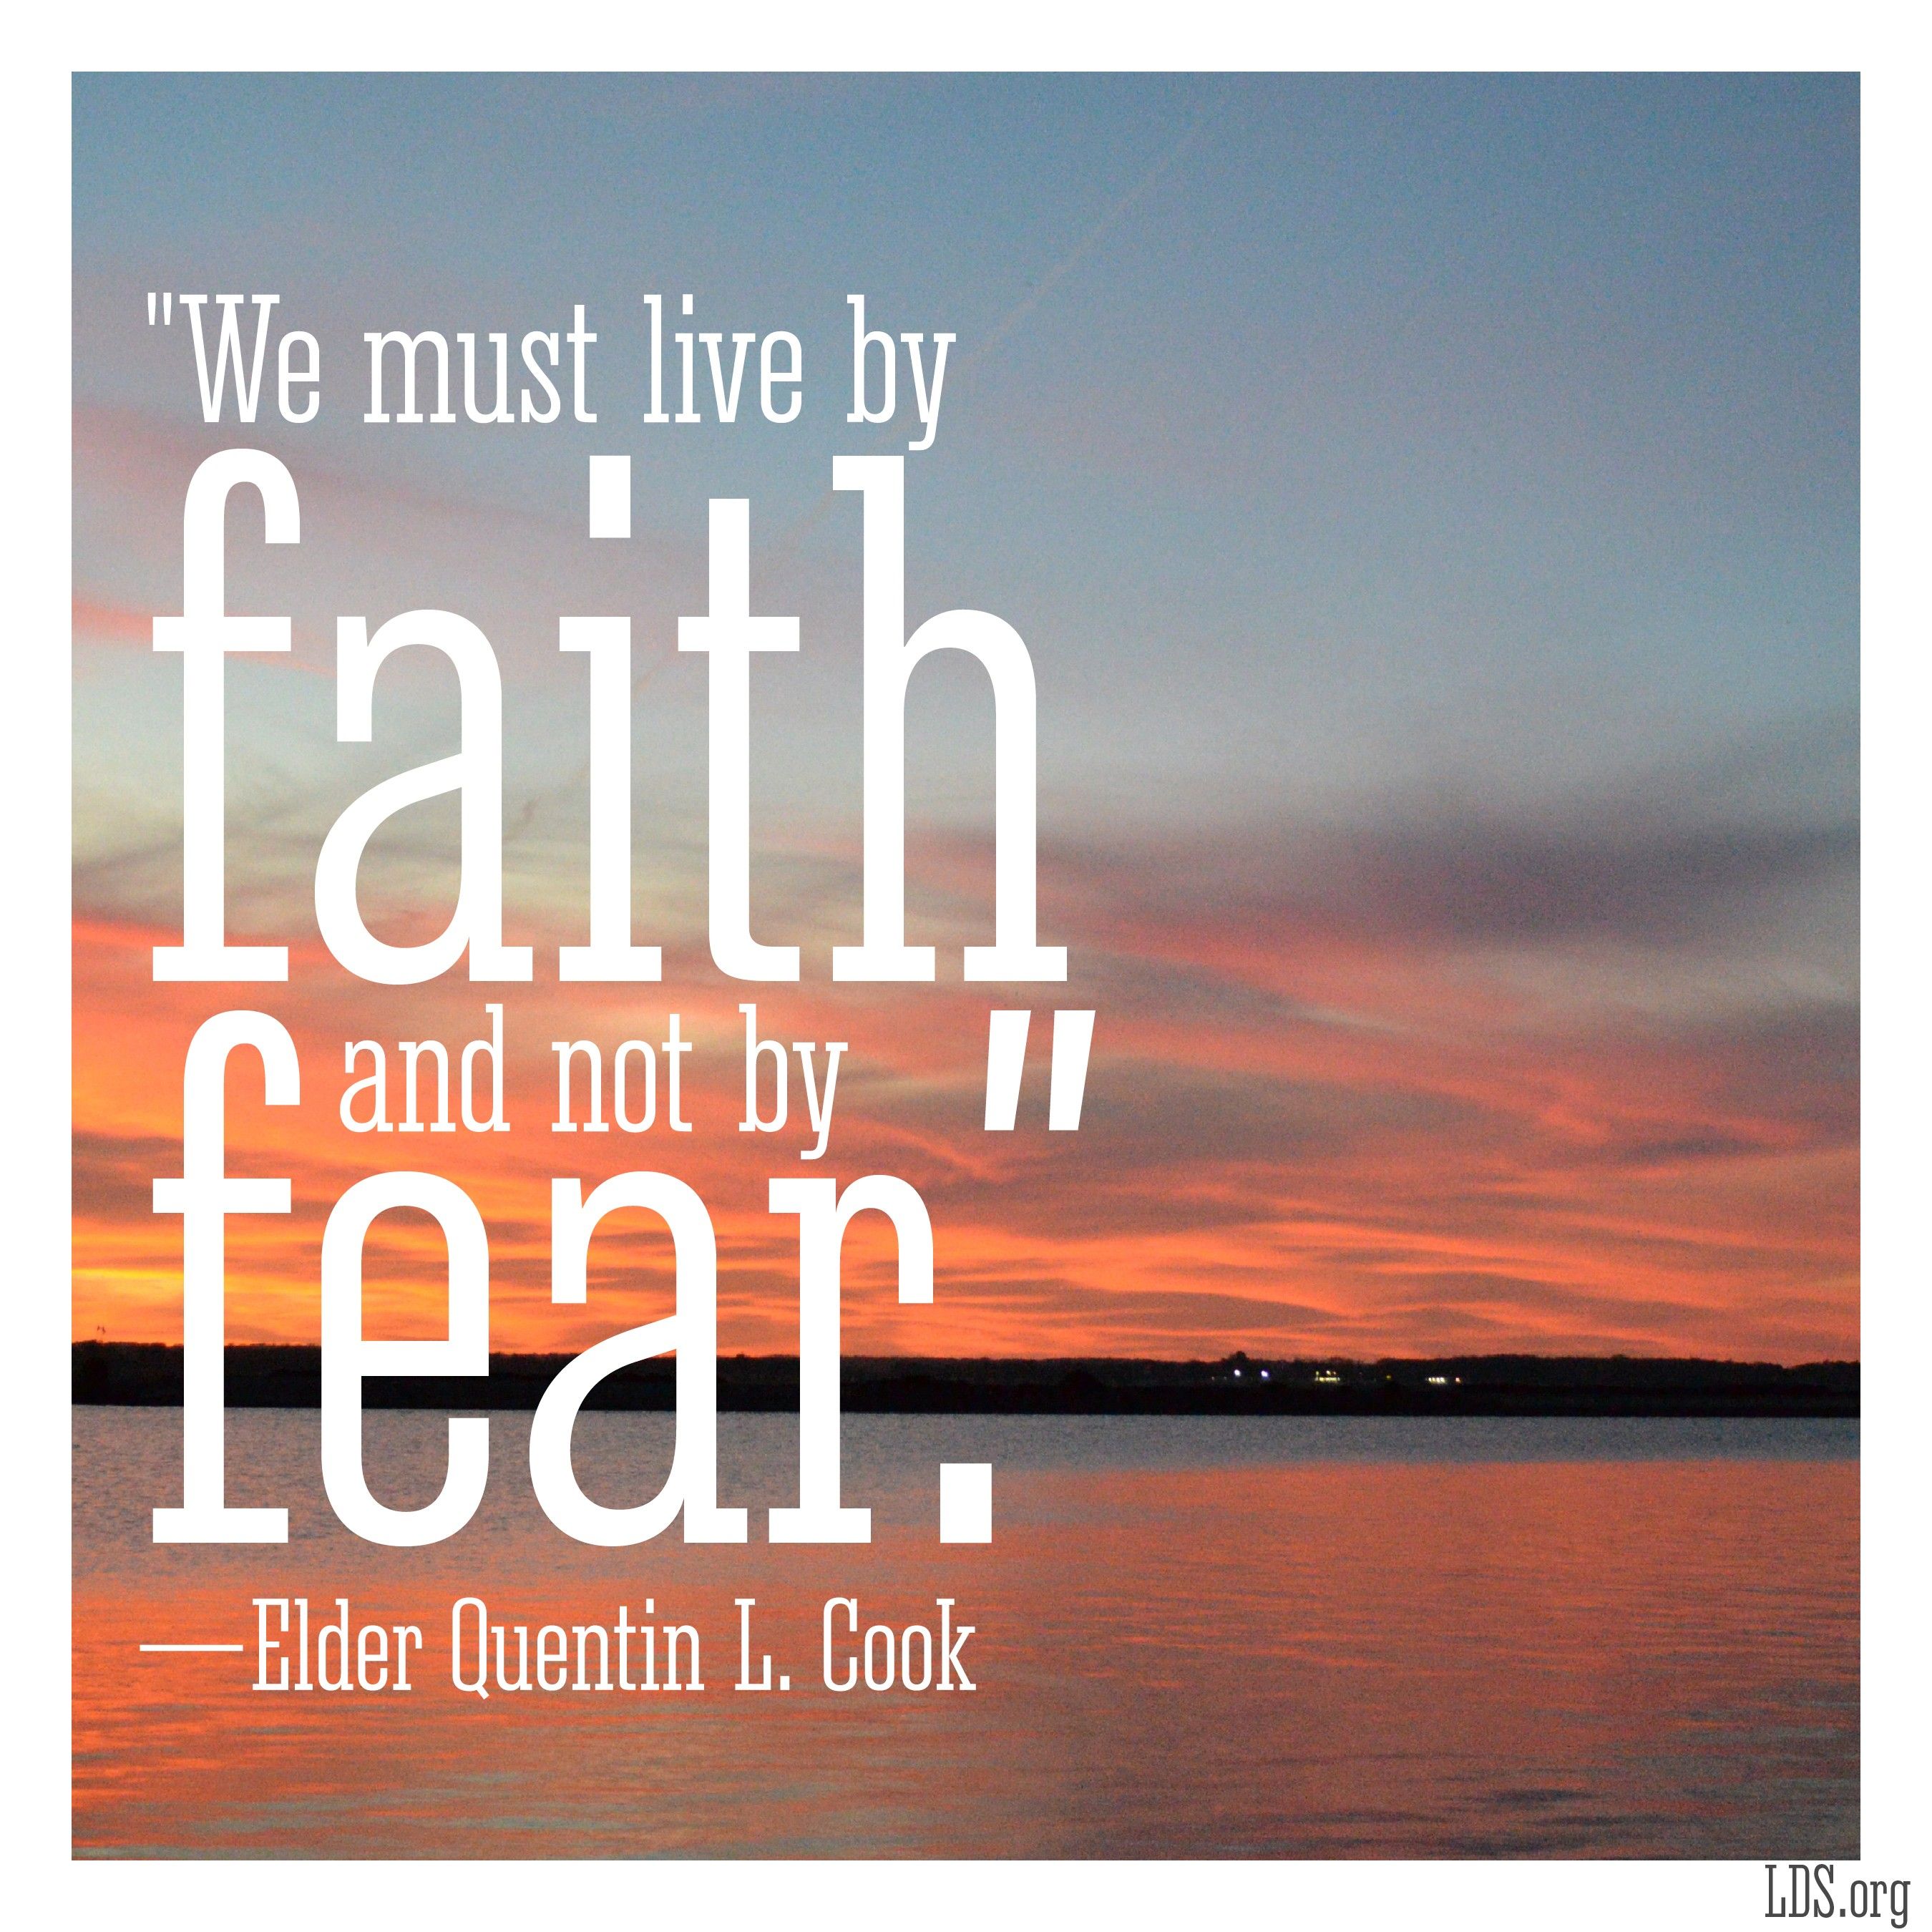 Faith, Not Fear